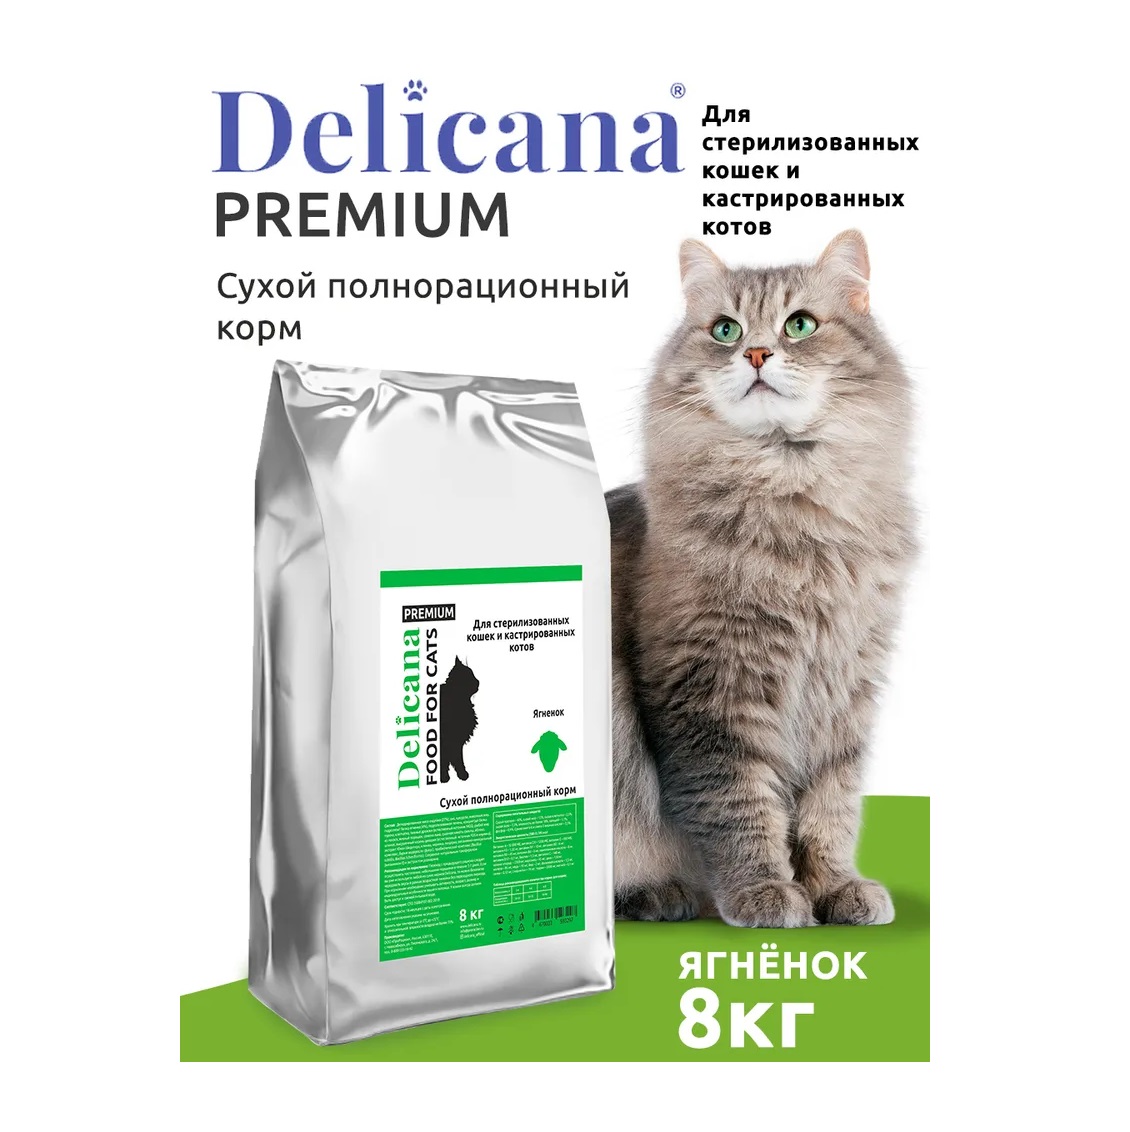 Деликана 8кг для кошек Стерилизованных - Ягненок (Delicana)